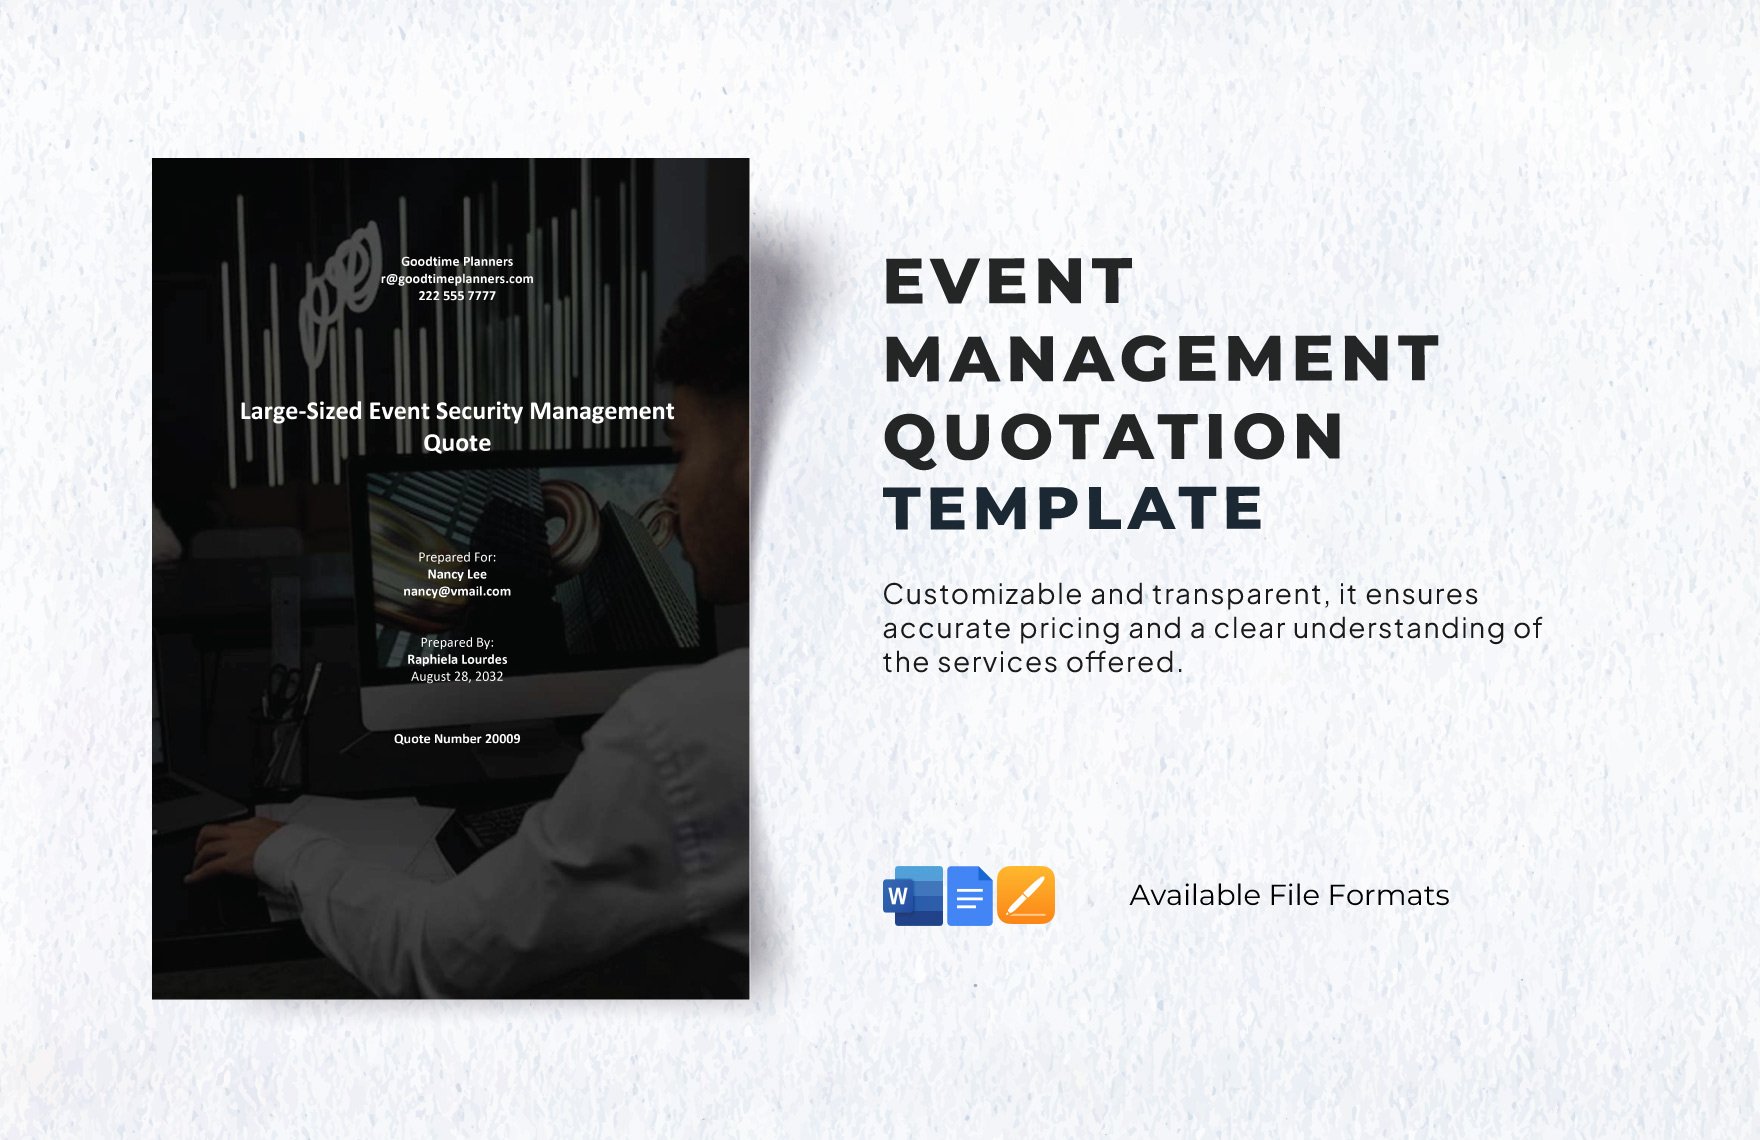 Event Management Quotation Template